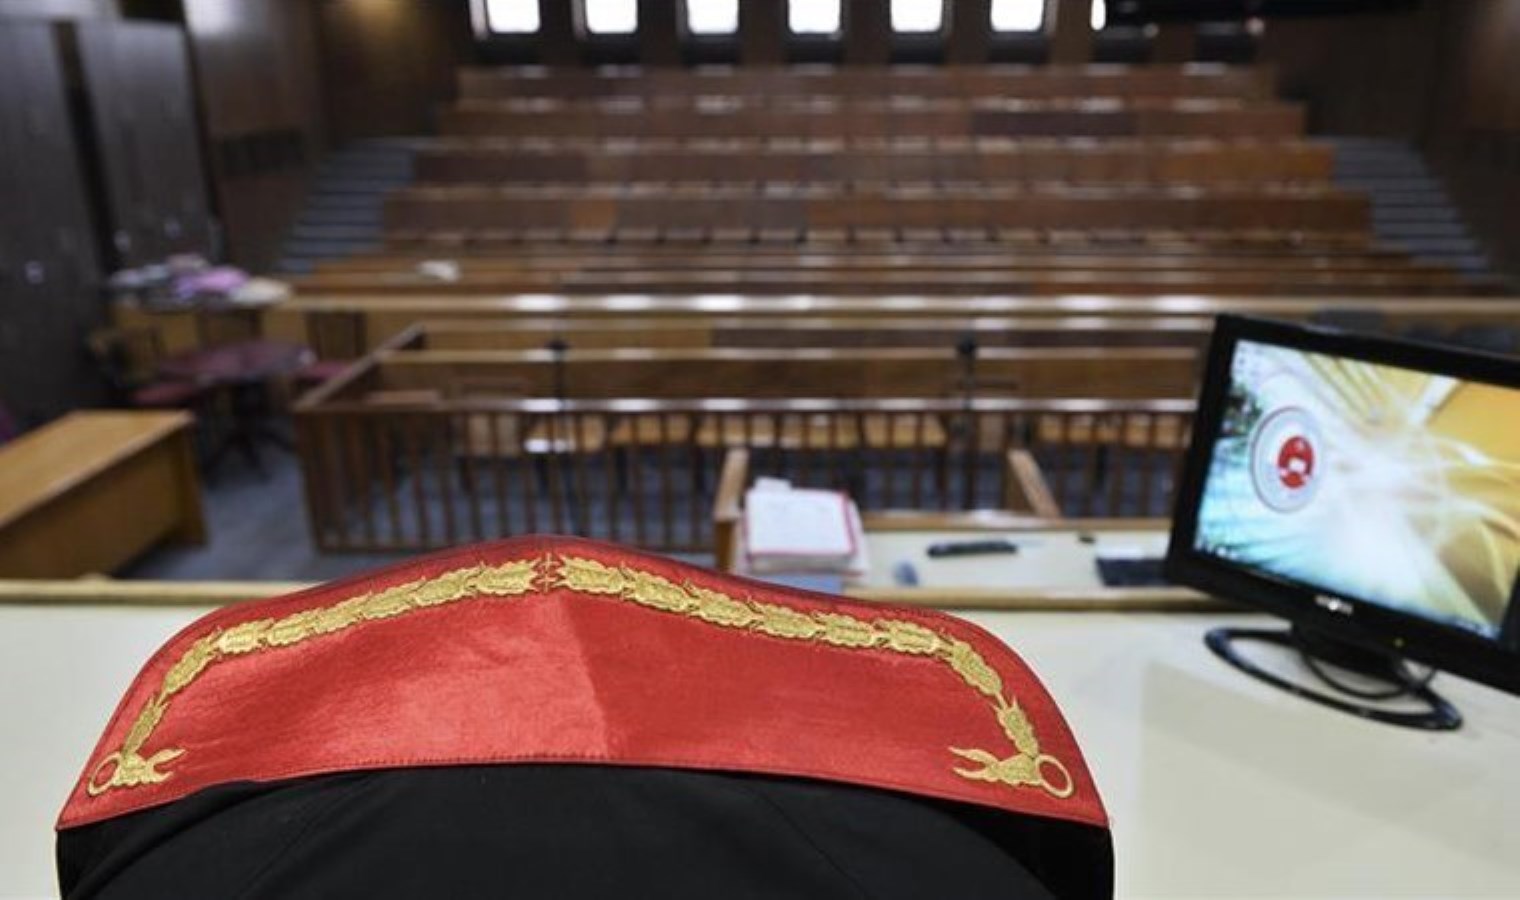 Yargıtay’da görülen ‘Ergenekon’da kumpas’ davasında 4 eski hakime hapis cezası